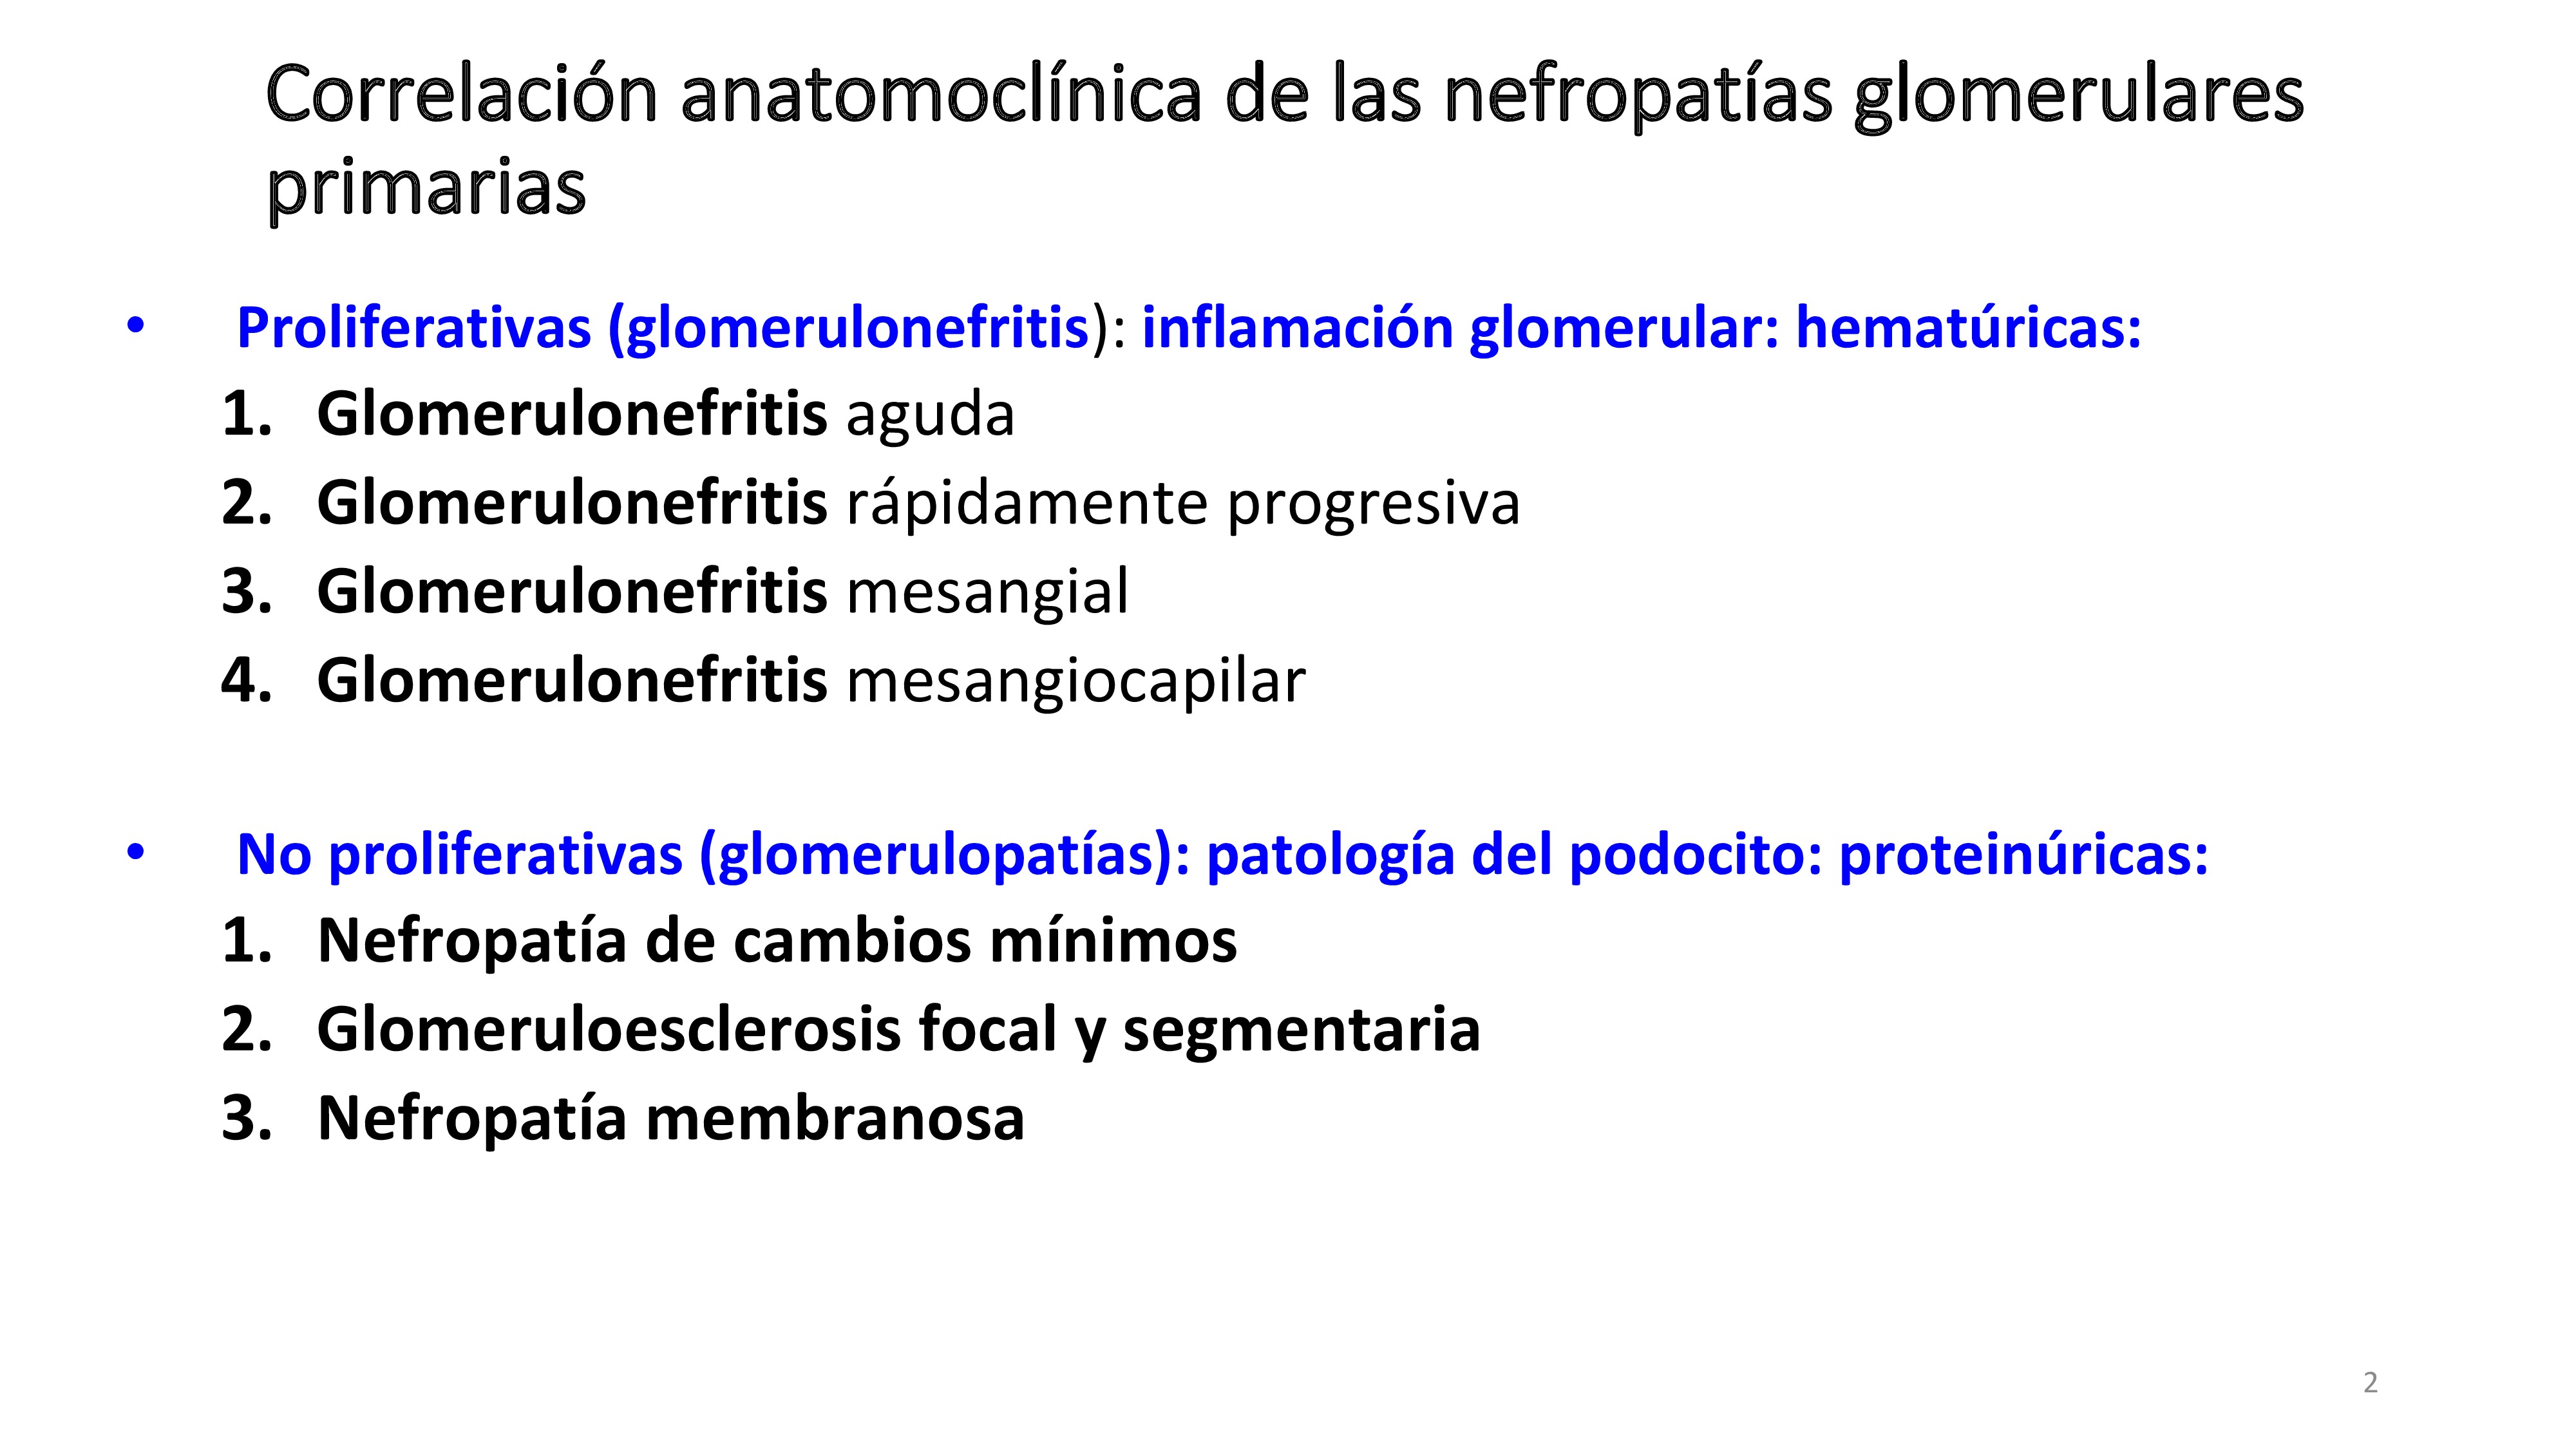 Las glomerulonefritis primarias se clasifican entre otras posibilidades según su anatomía patológica en proliferativas y no proliferativas Esto es con aumento del número de células o no en la biopsia. En esta lección analizamos las GMN no proliferativas. En la diapositiva se muestra esta clasificación.